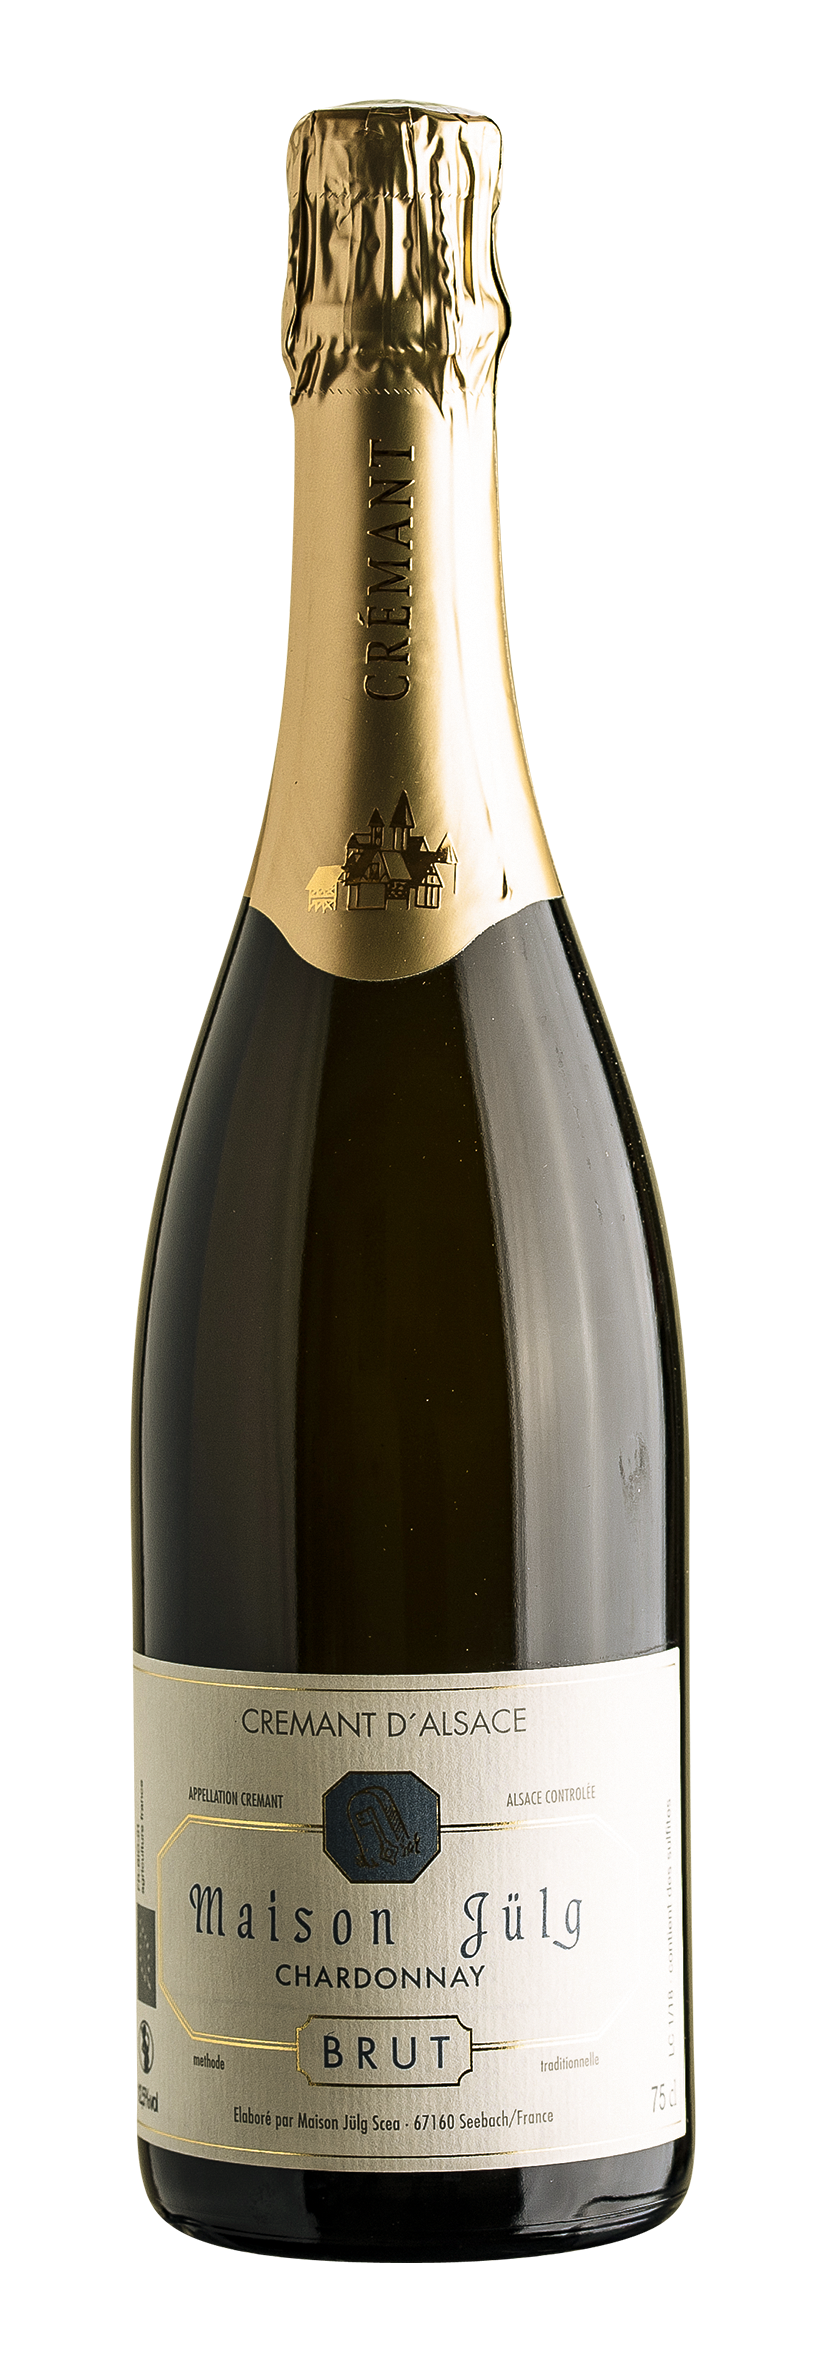 Crémant d'Alsace AOC Chardonnay 0